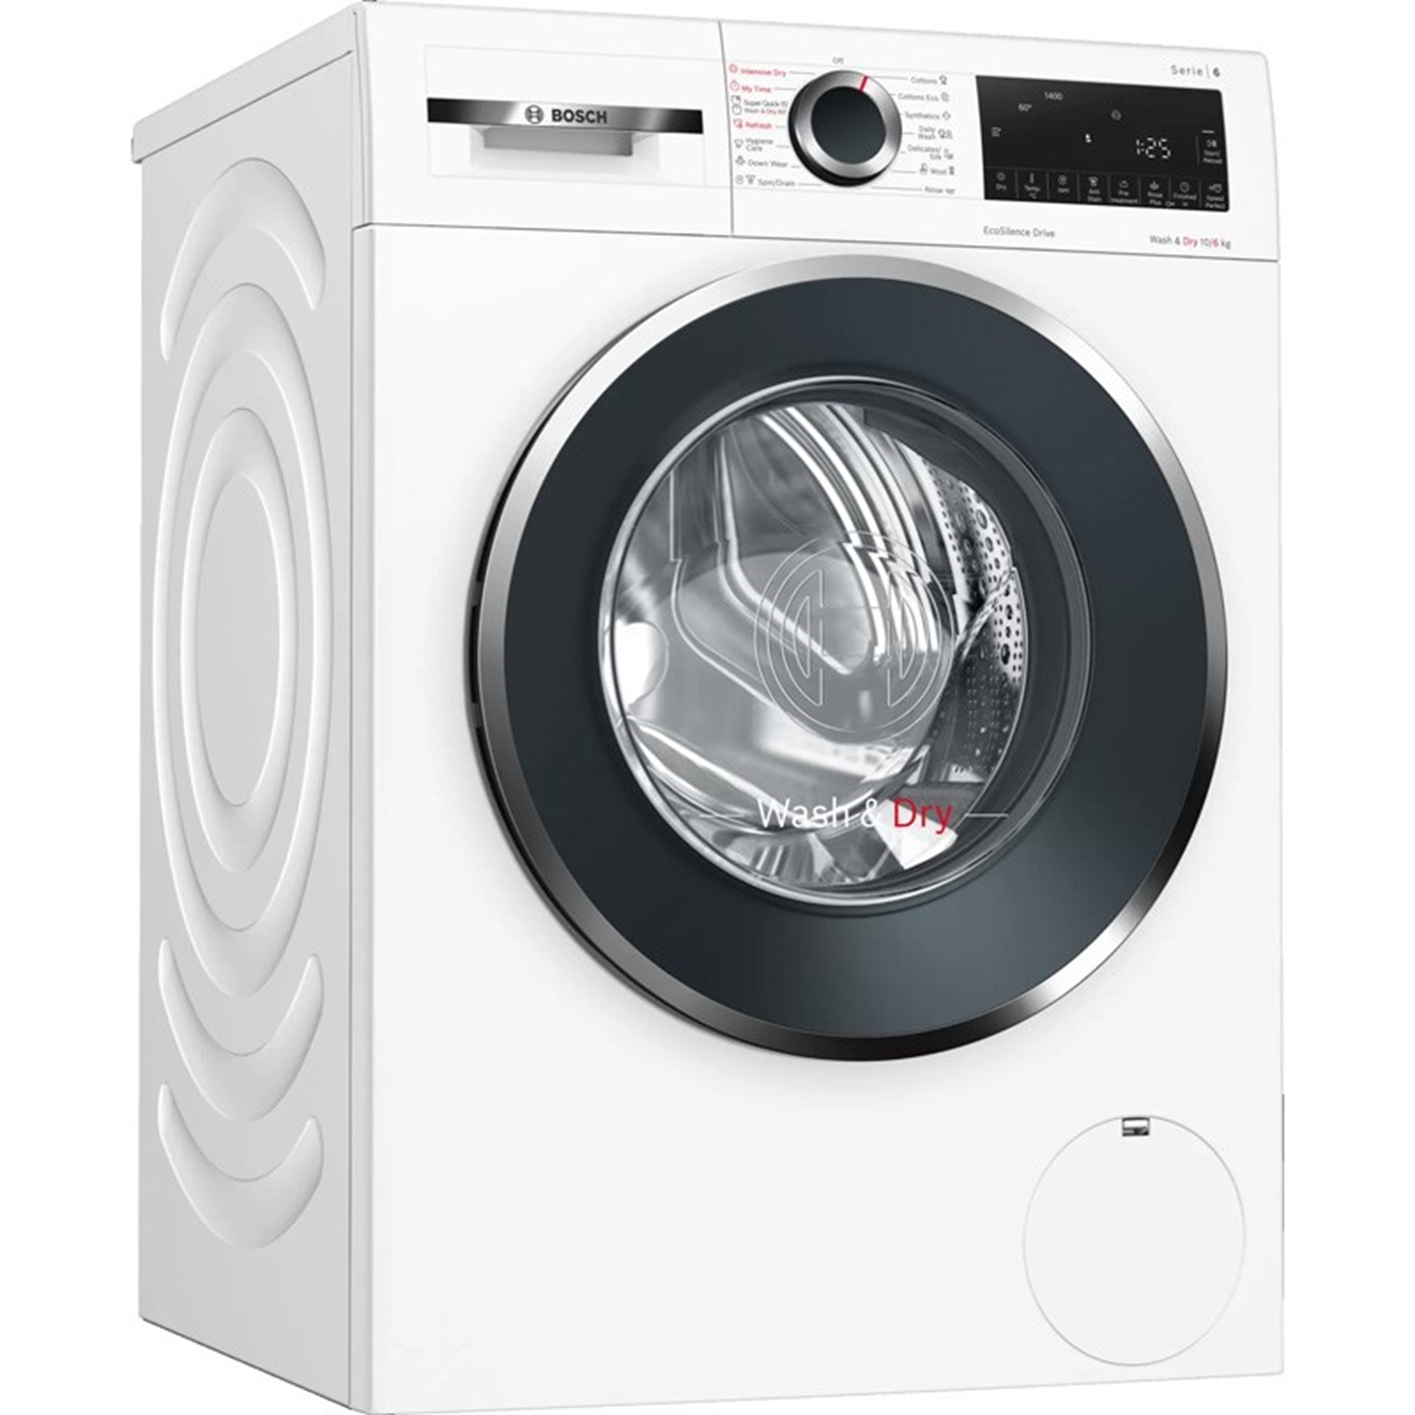 Hình ảnh của Máy giặt Bosch WNA254U0SG